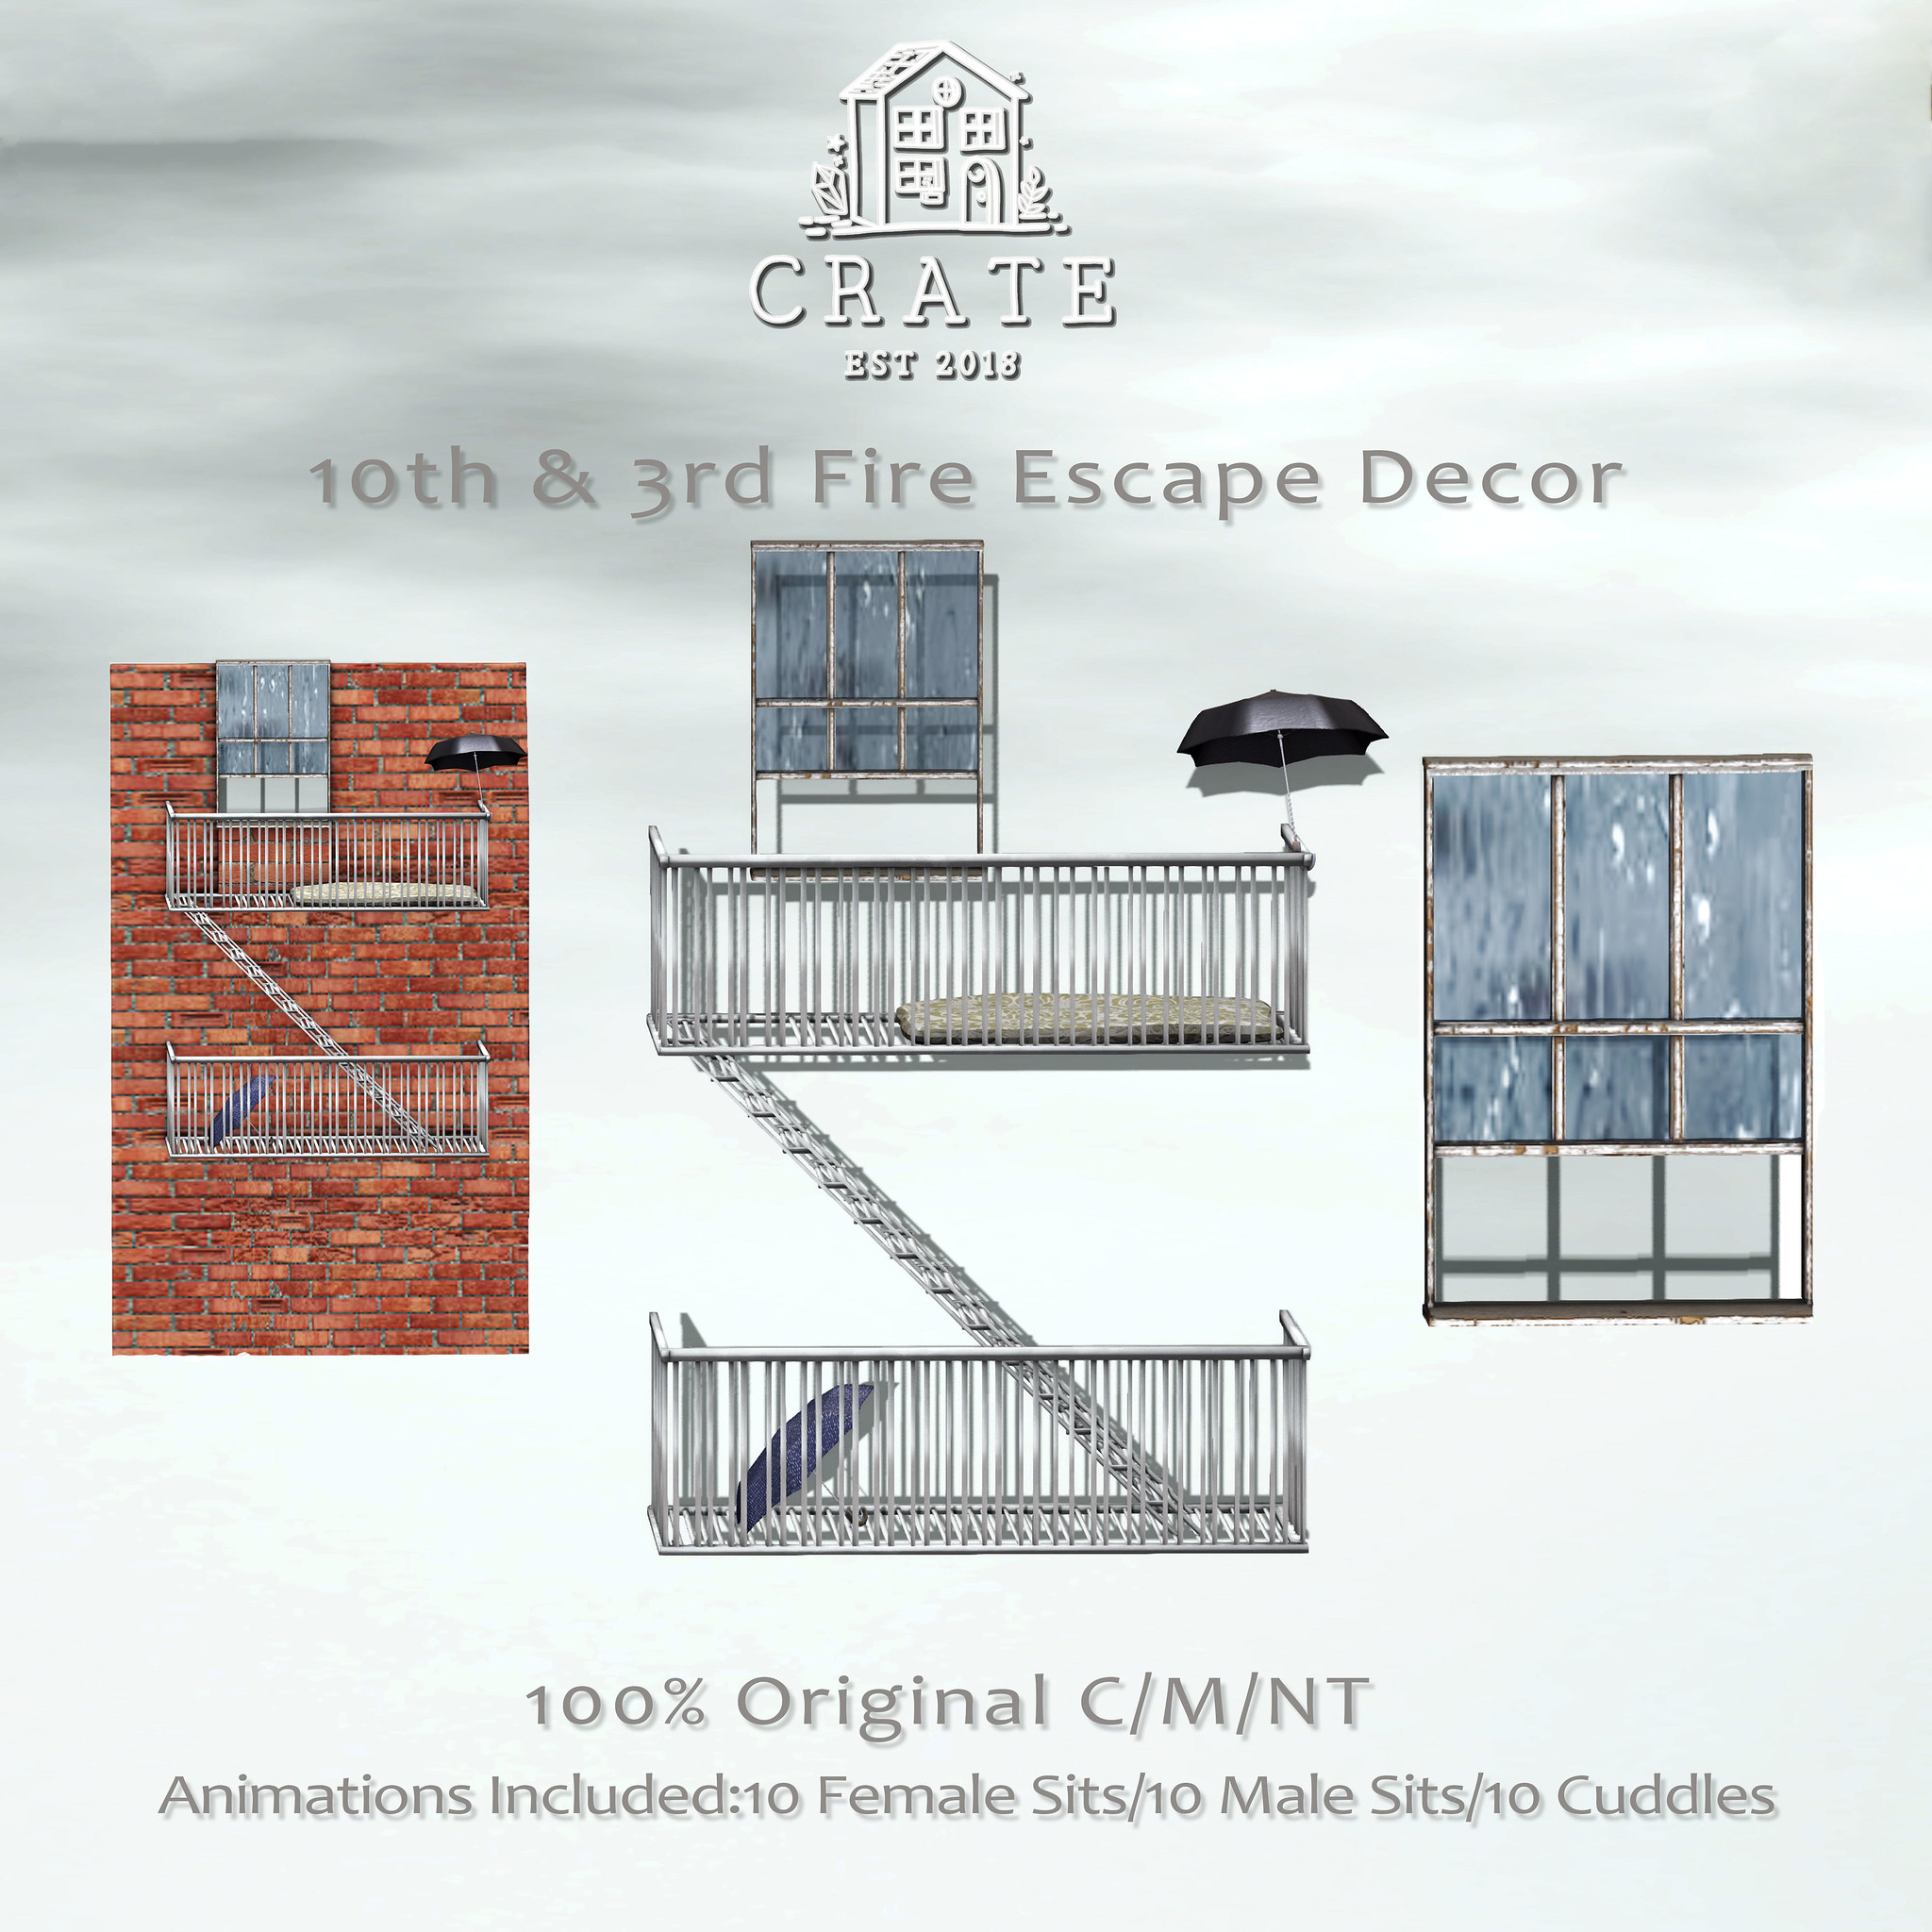 Crate – 10th & 3rd Fire Escape